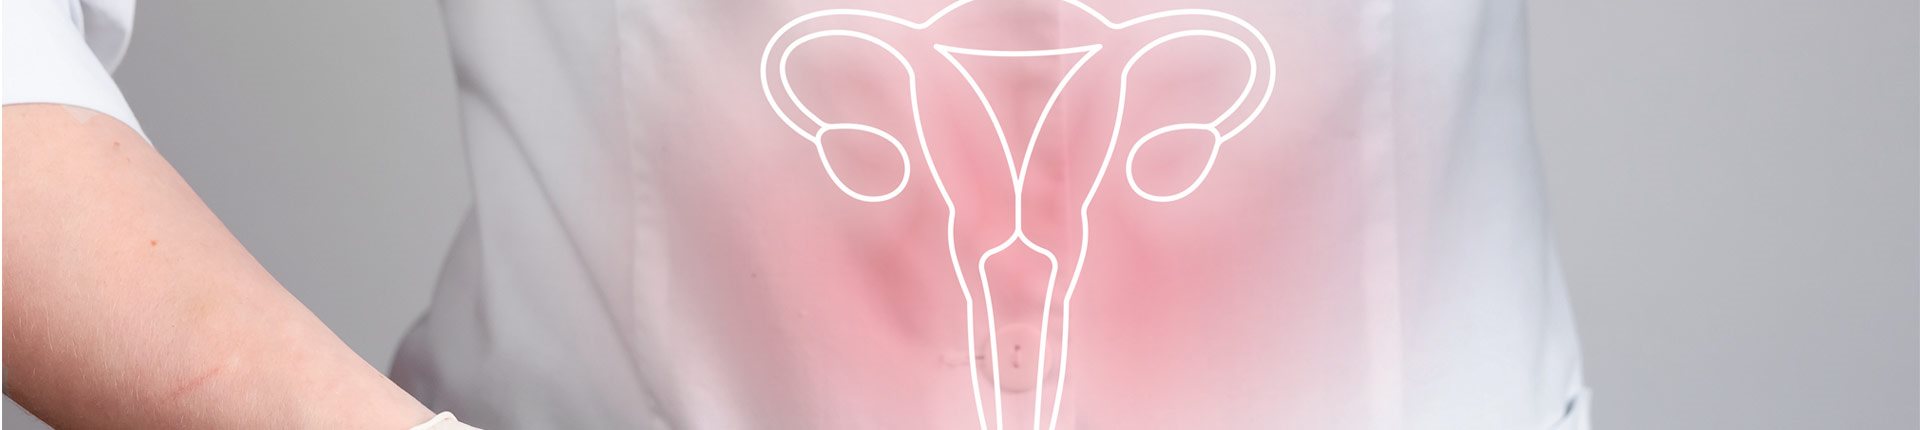 Rak szyjki macicy, nieoczekiwany skutek „wolności seksualnej”